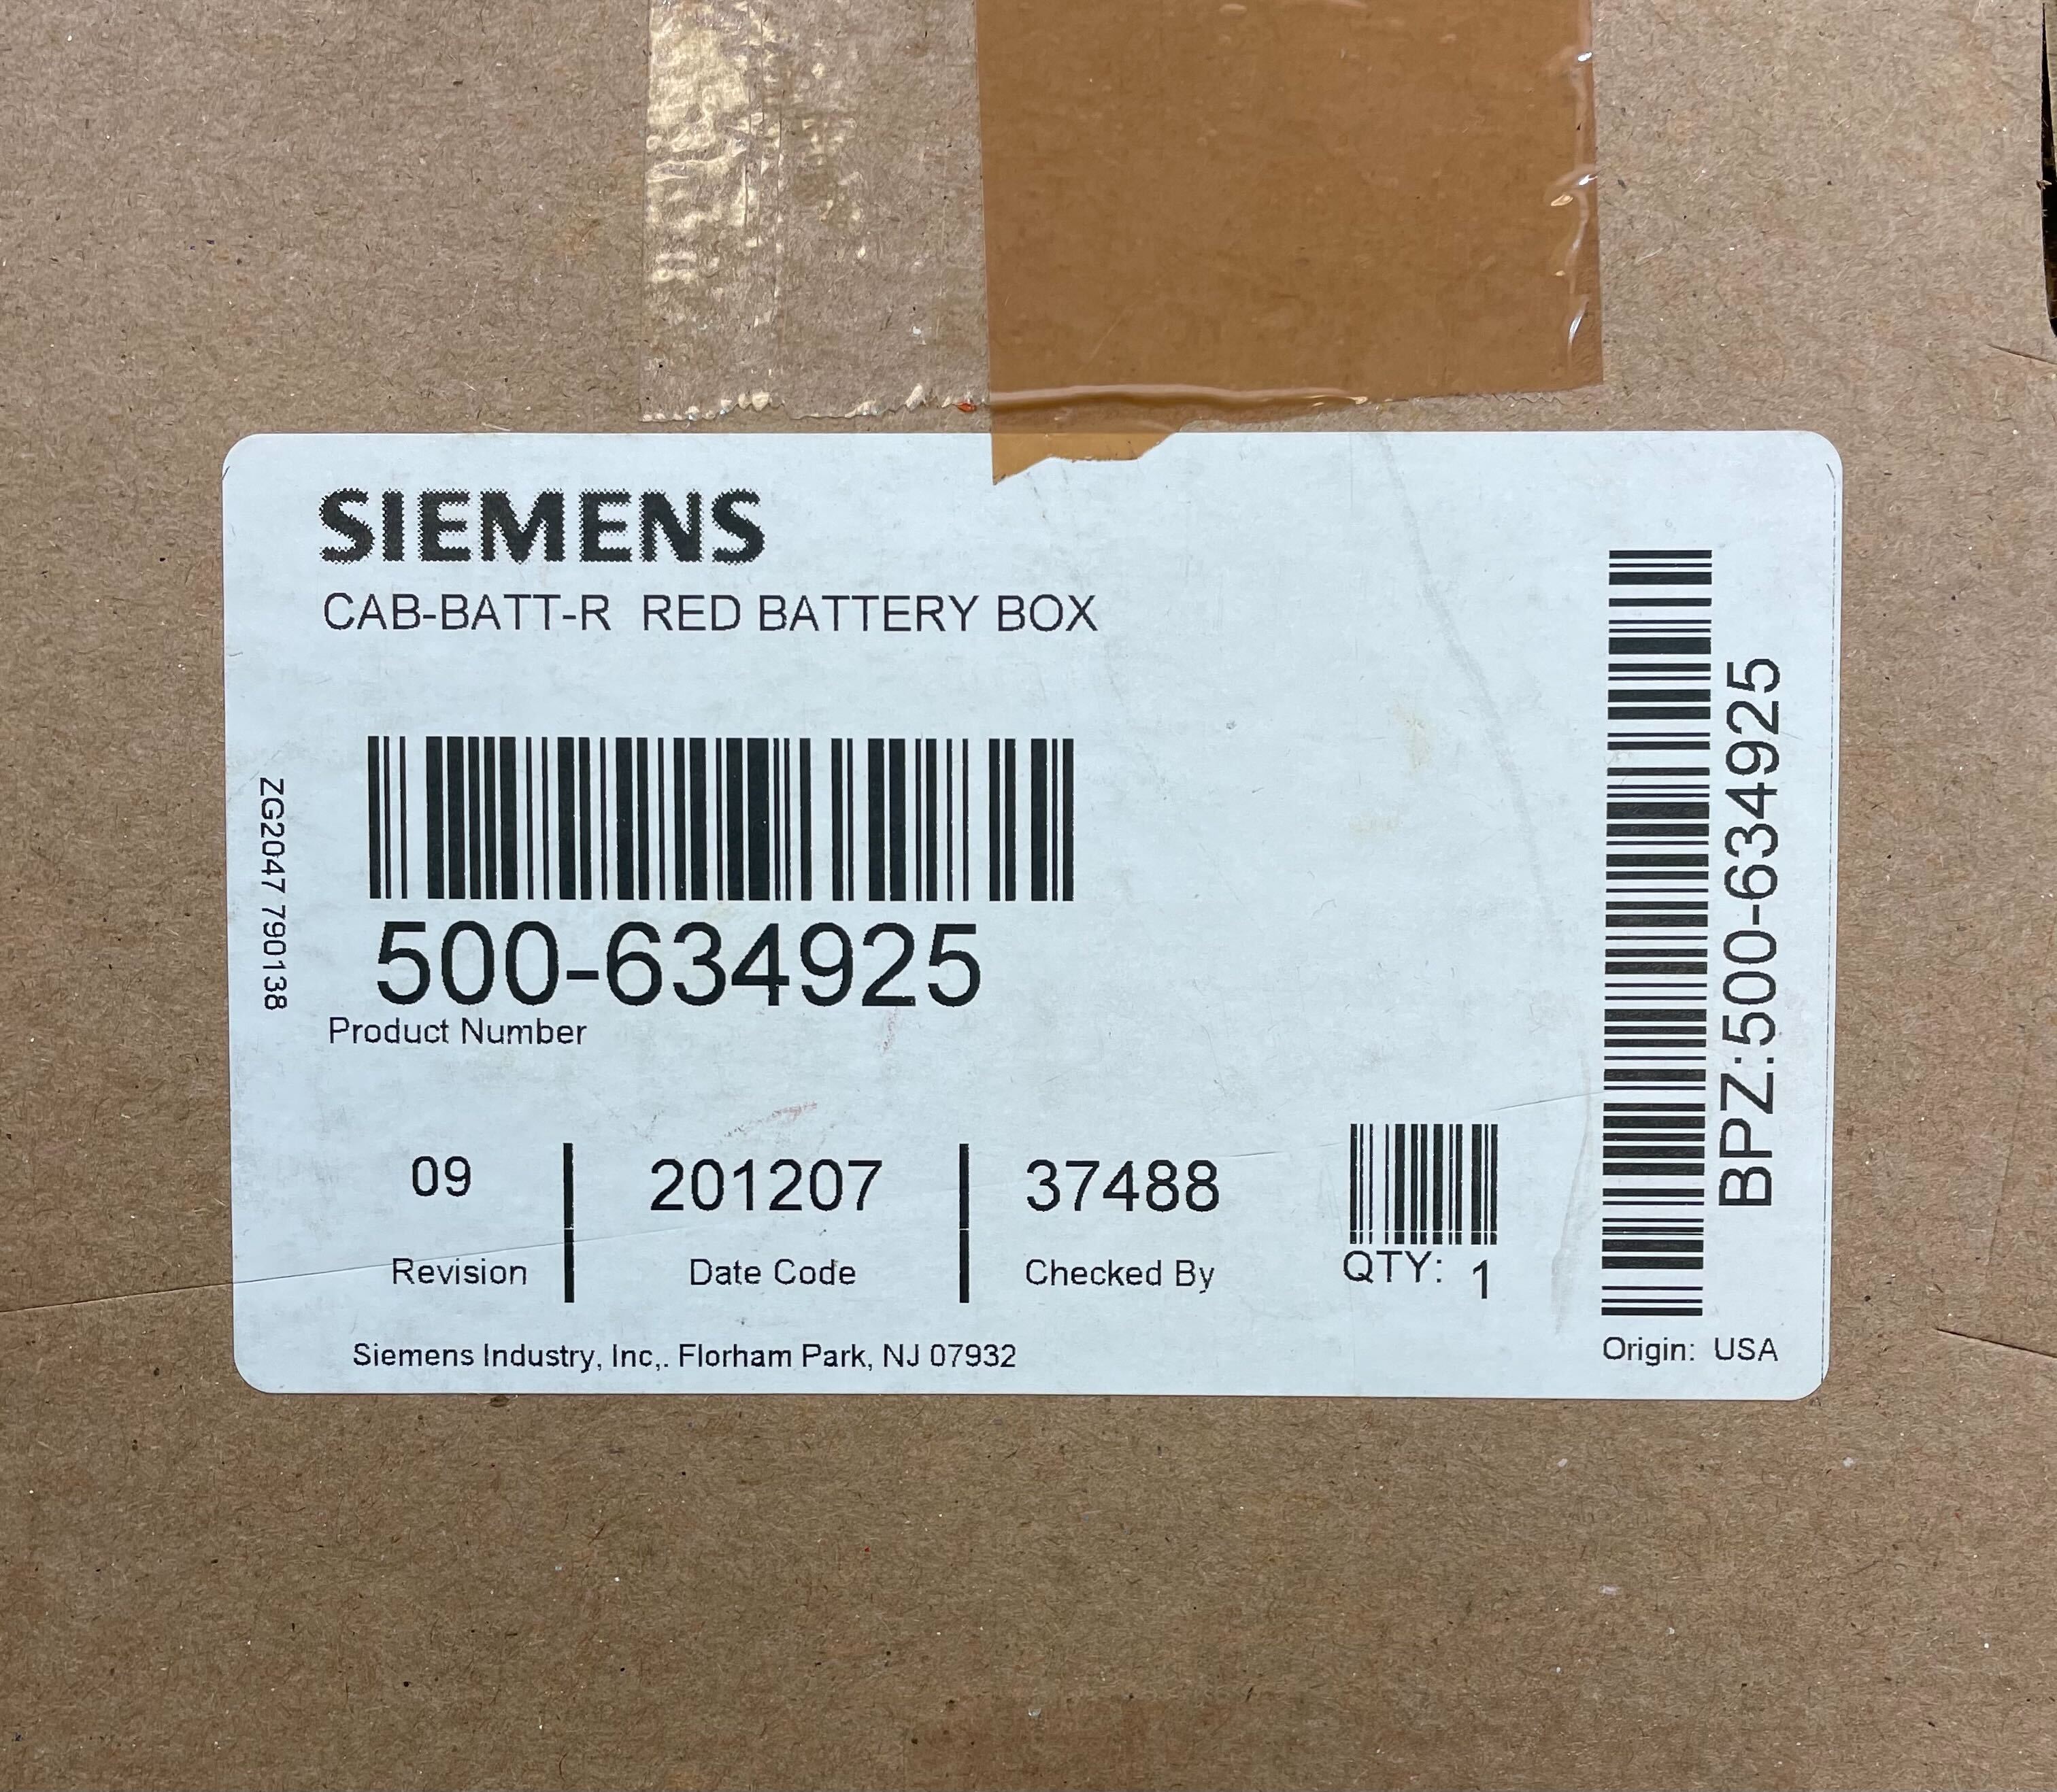 Siemens CAB-BATT-R